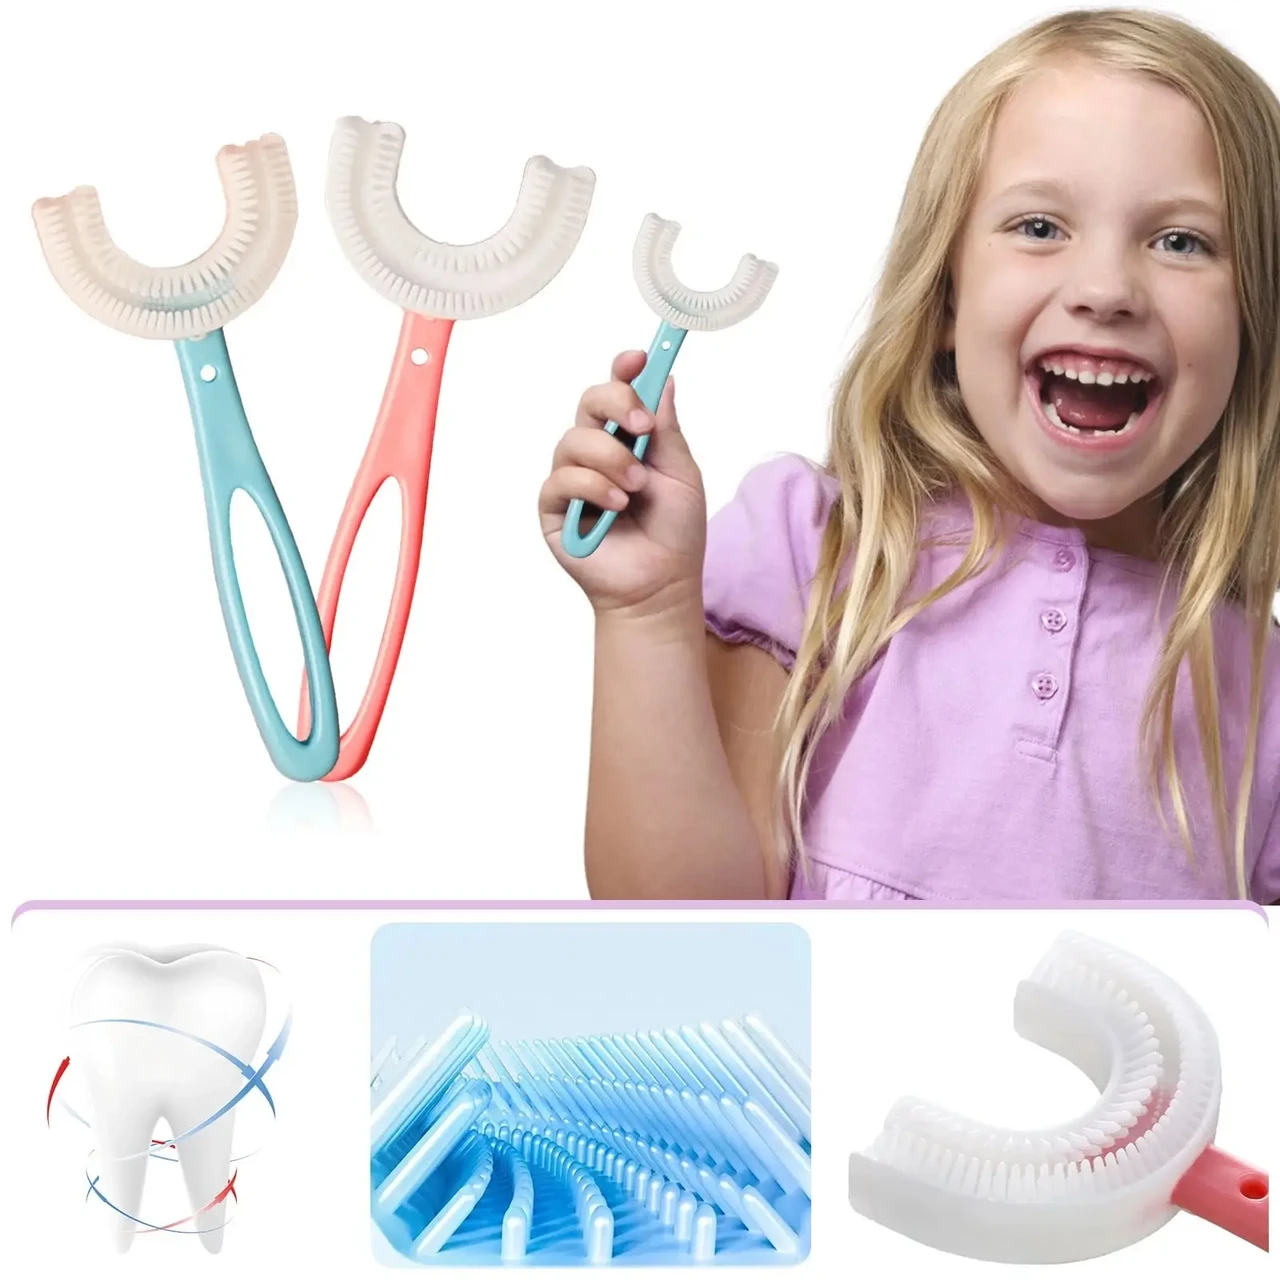 Дитяча U-подібна зубна щітка капа для дітей на 360 градусів Рожева (діаметр 4,5)